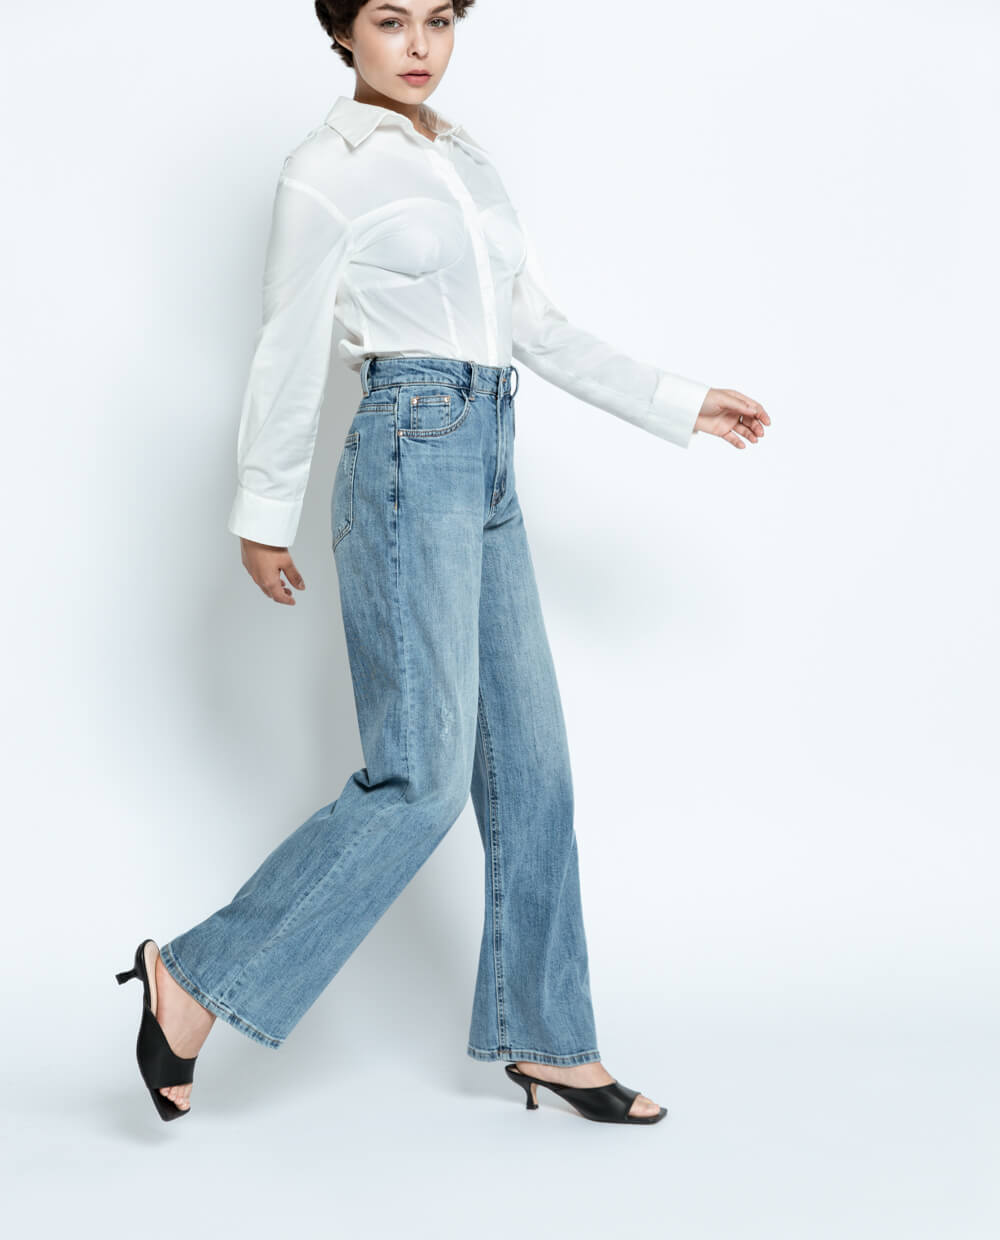 Mix đồ bằng quần jeans với váy dài: Ngọc Trinh nhìn chán hẳn - 2sao